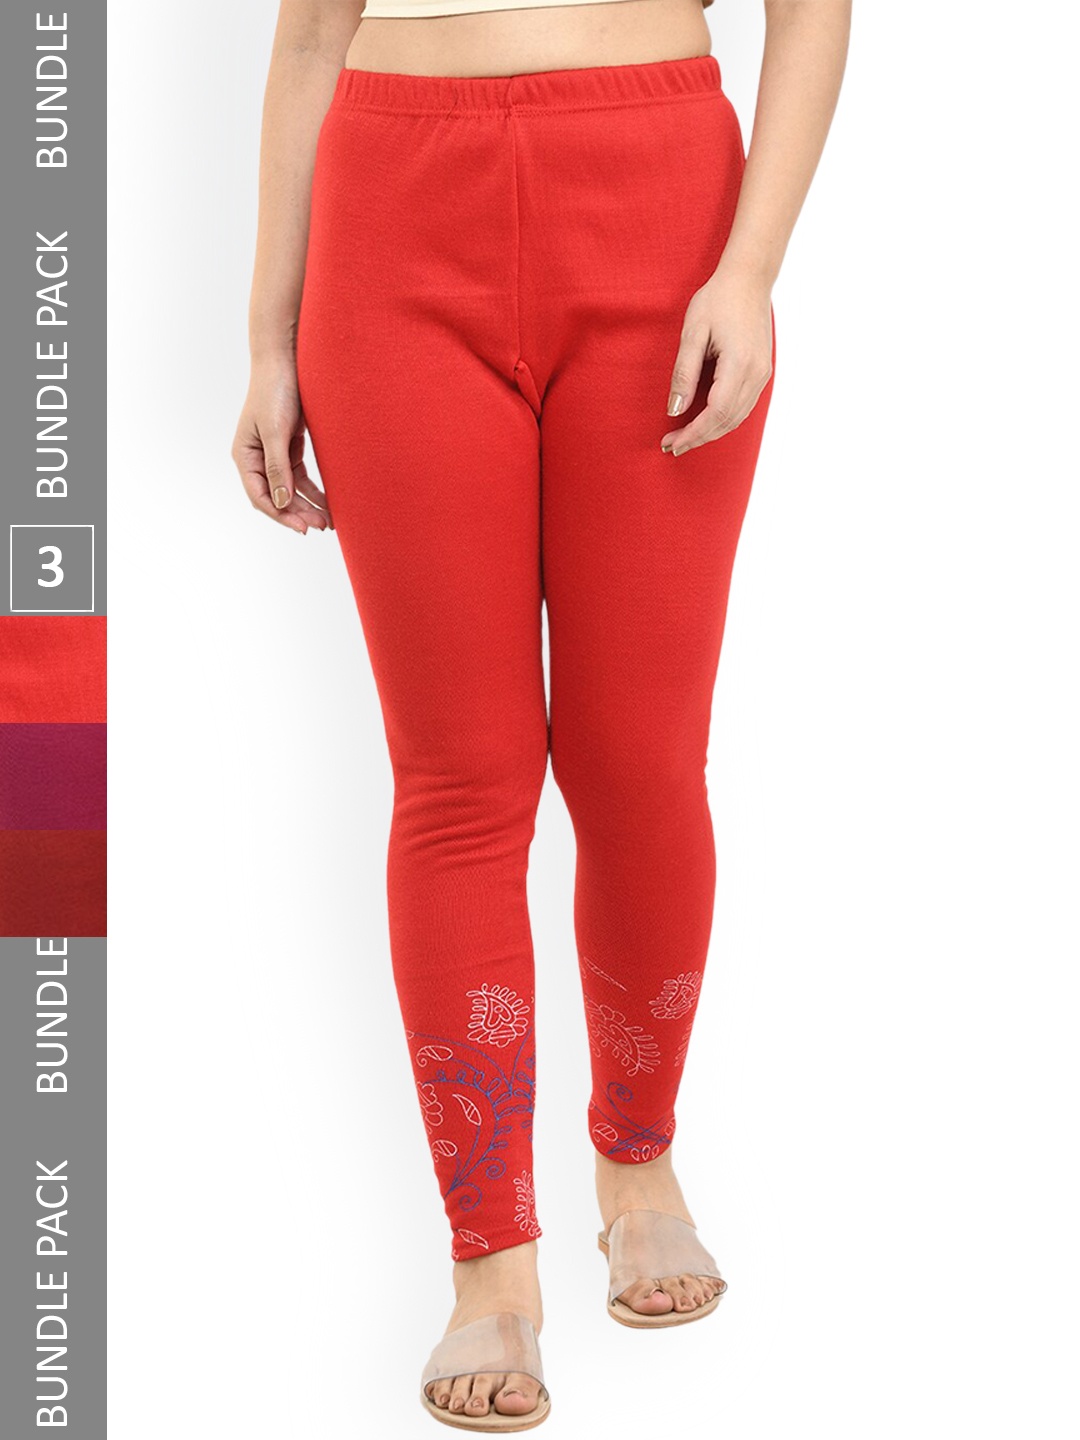 

IndiWeaves Women Pack Of 3 Printed Woolen Warm Ankle Length Leggings, Red